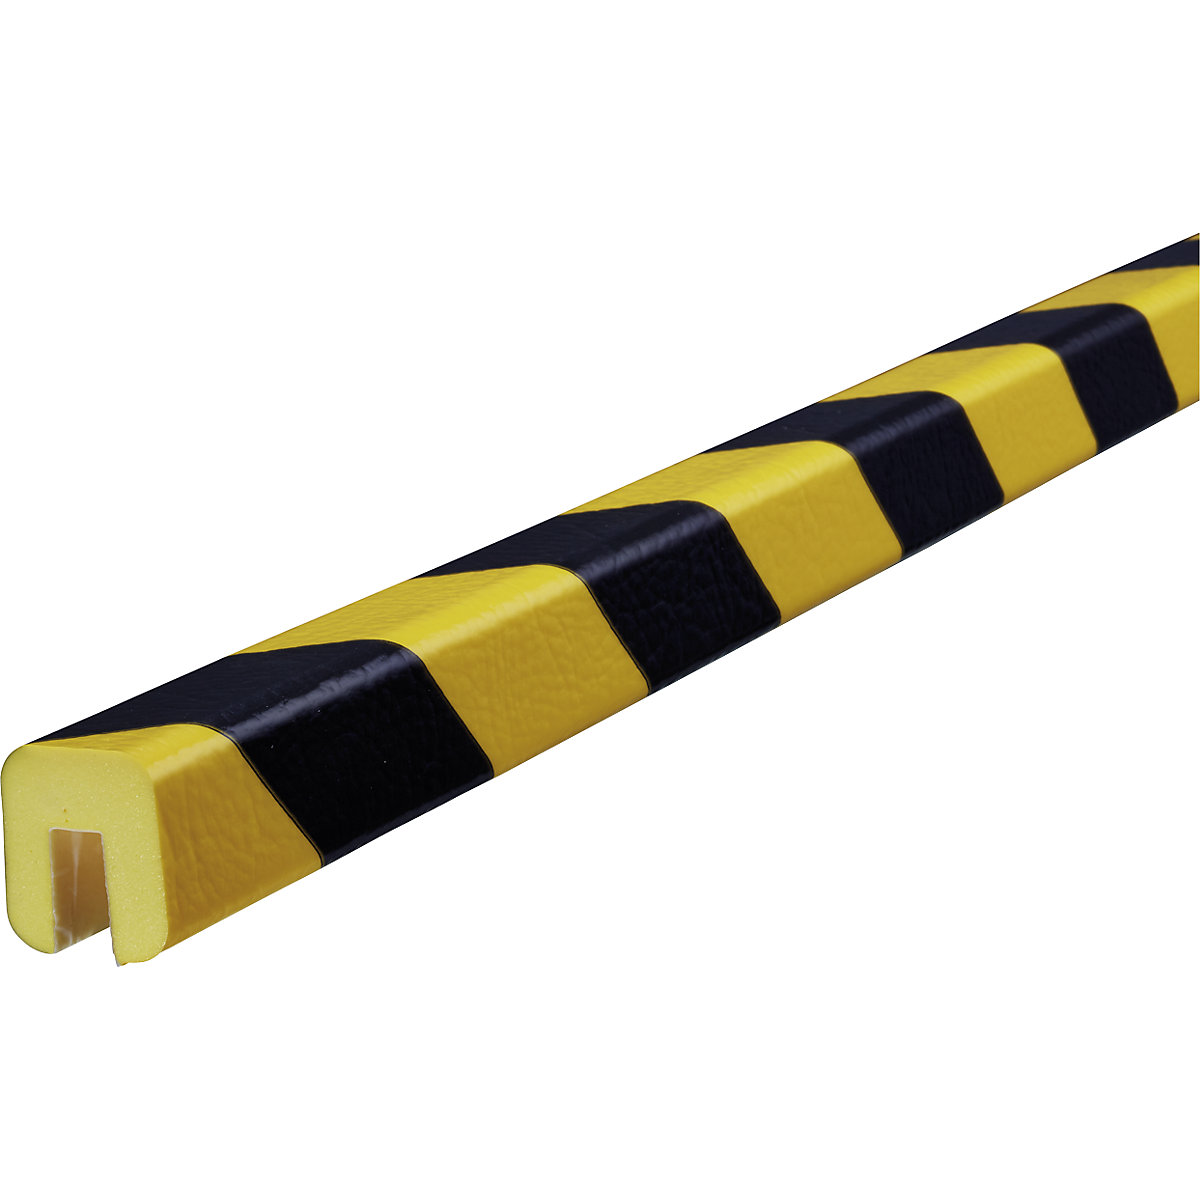 Knuffi®-randbescherming – SHG, type G, 1 rol à 50 m, zwart/geel-20